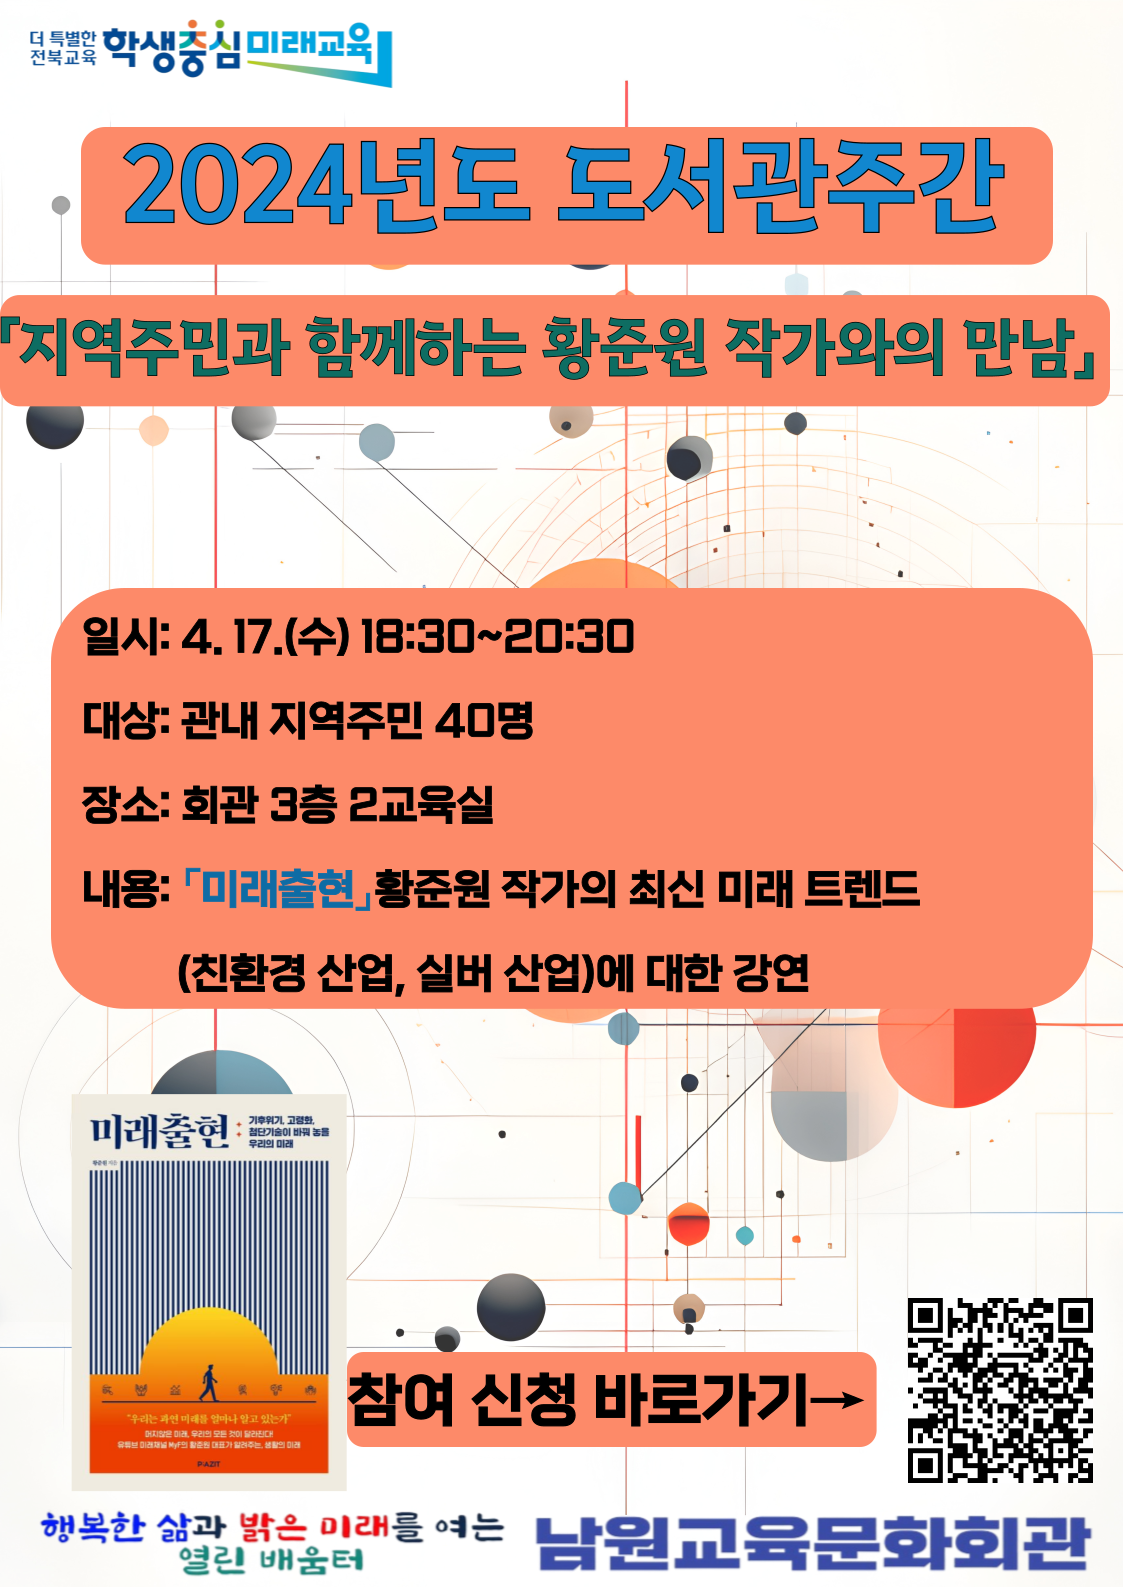 사본 -2024년도 도서관주간 행사 「황준원 작가와의 만남」 홍보 포스터